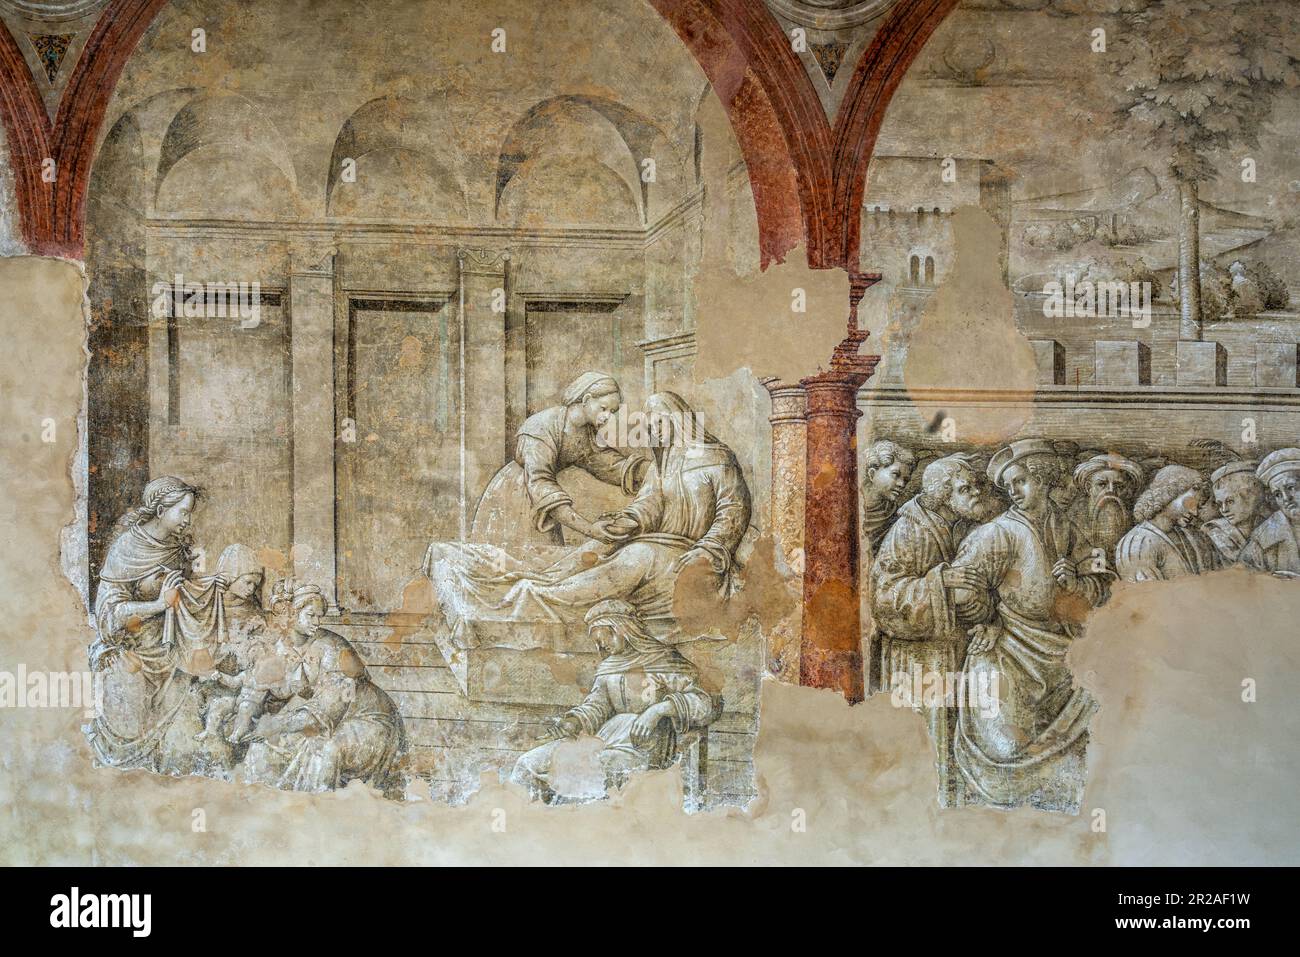 Fresken im Benediktinerkloster von San Pietro, einem außergewöhnlichen monumentalen Komplex in Reggio Emilia. Reggio Emilia, Emilia Romagna, Italien Stockfoto